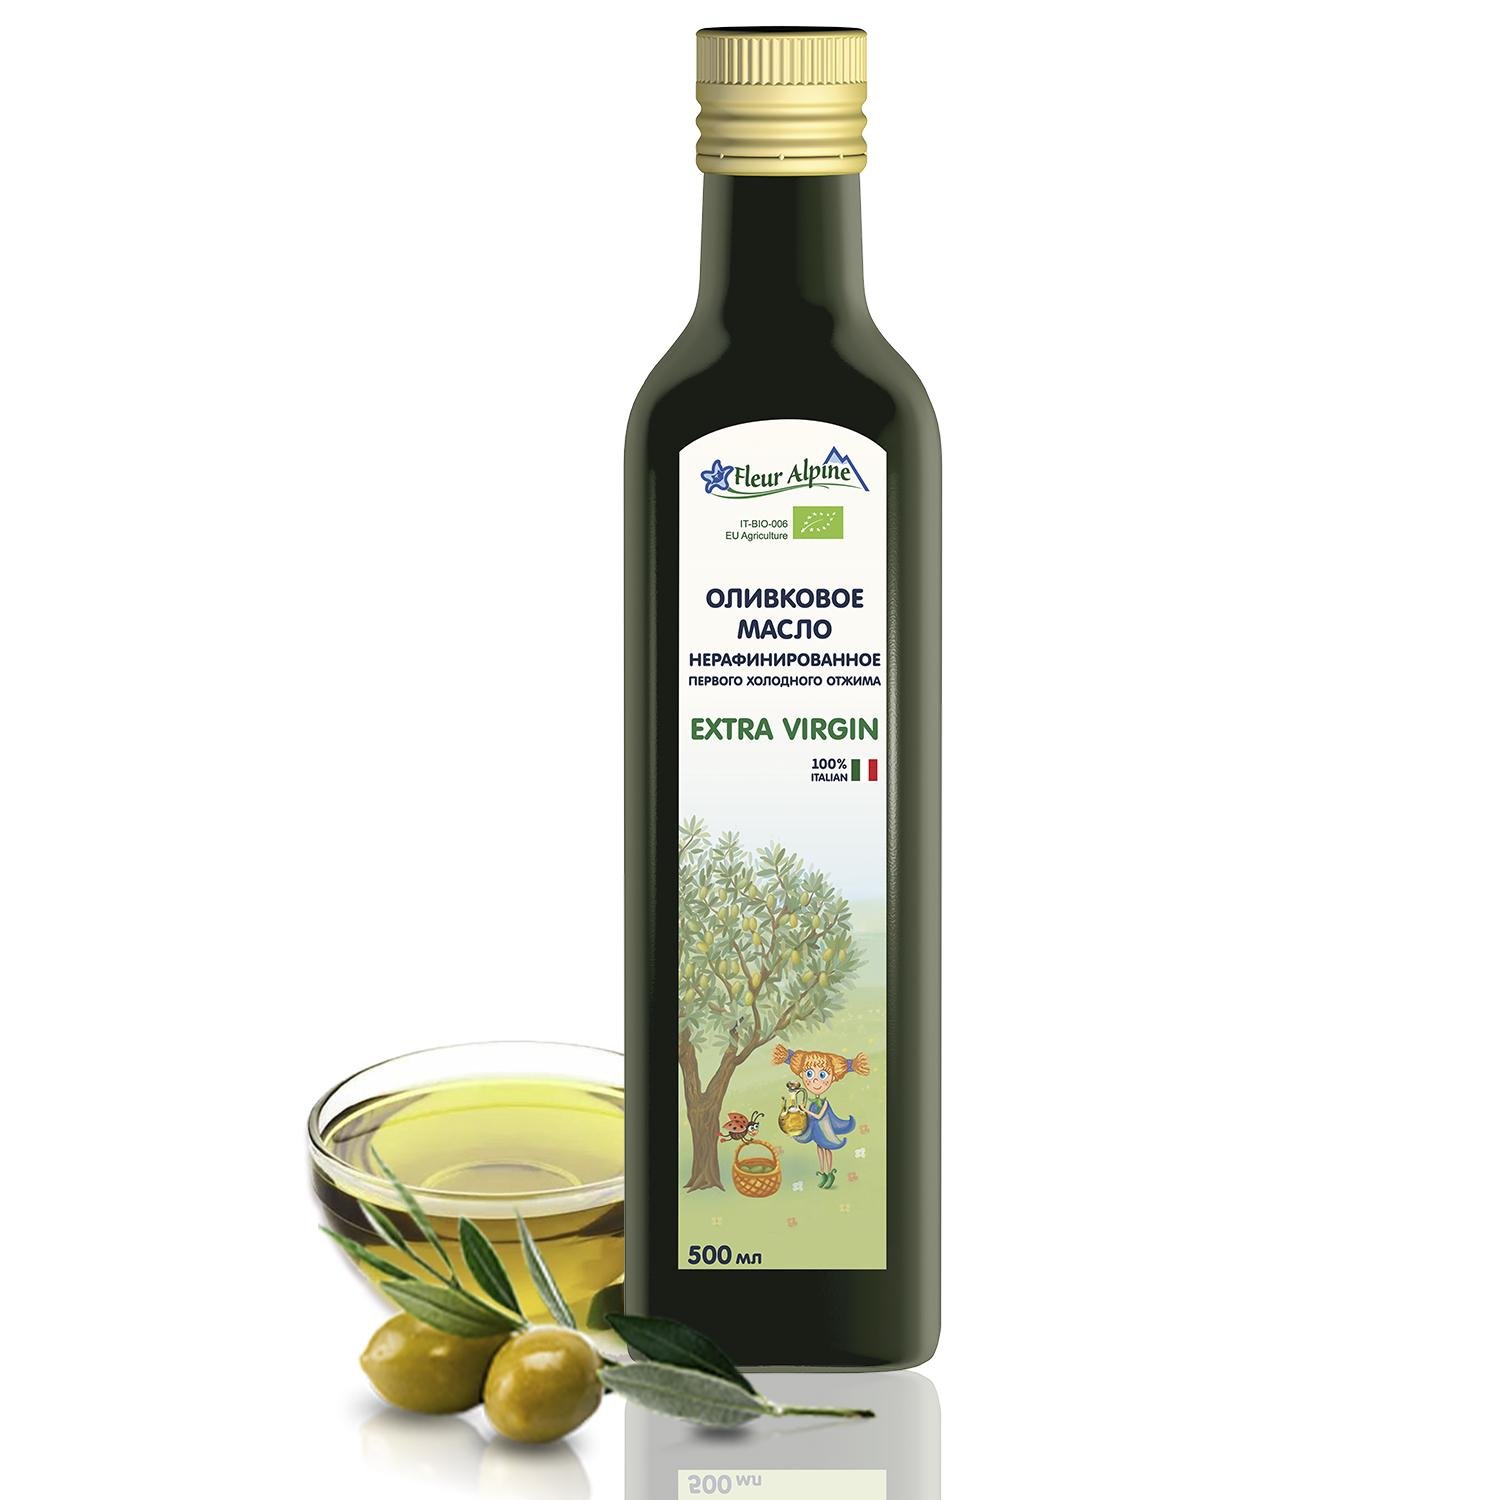 Оливковое масло Fleur Alpine первого холодного отжима Extra Virgin 500 мл